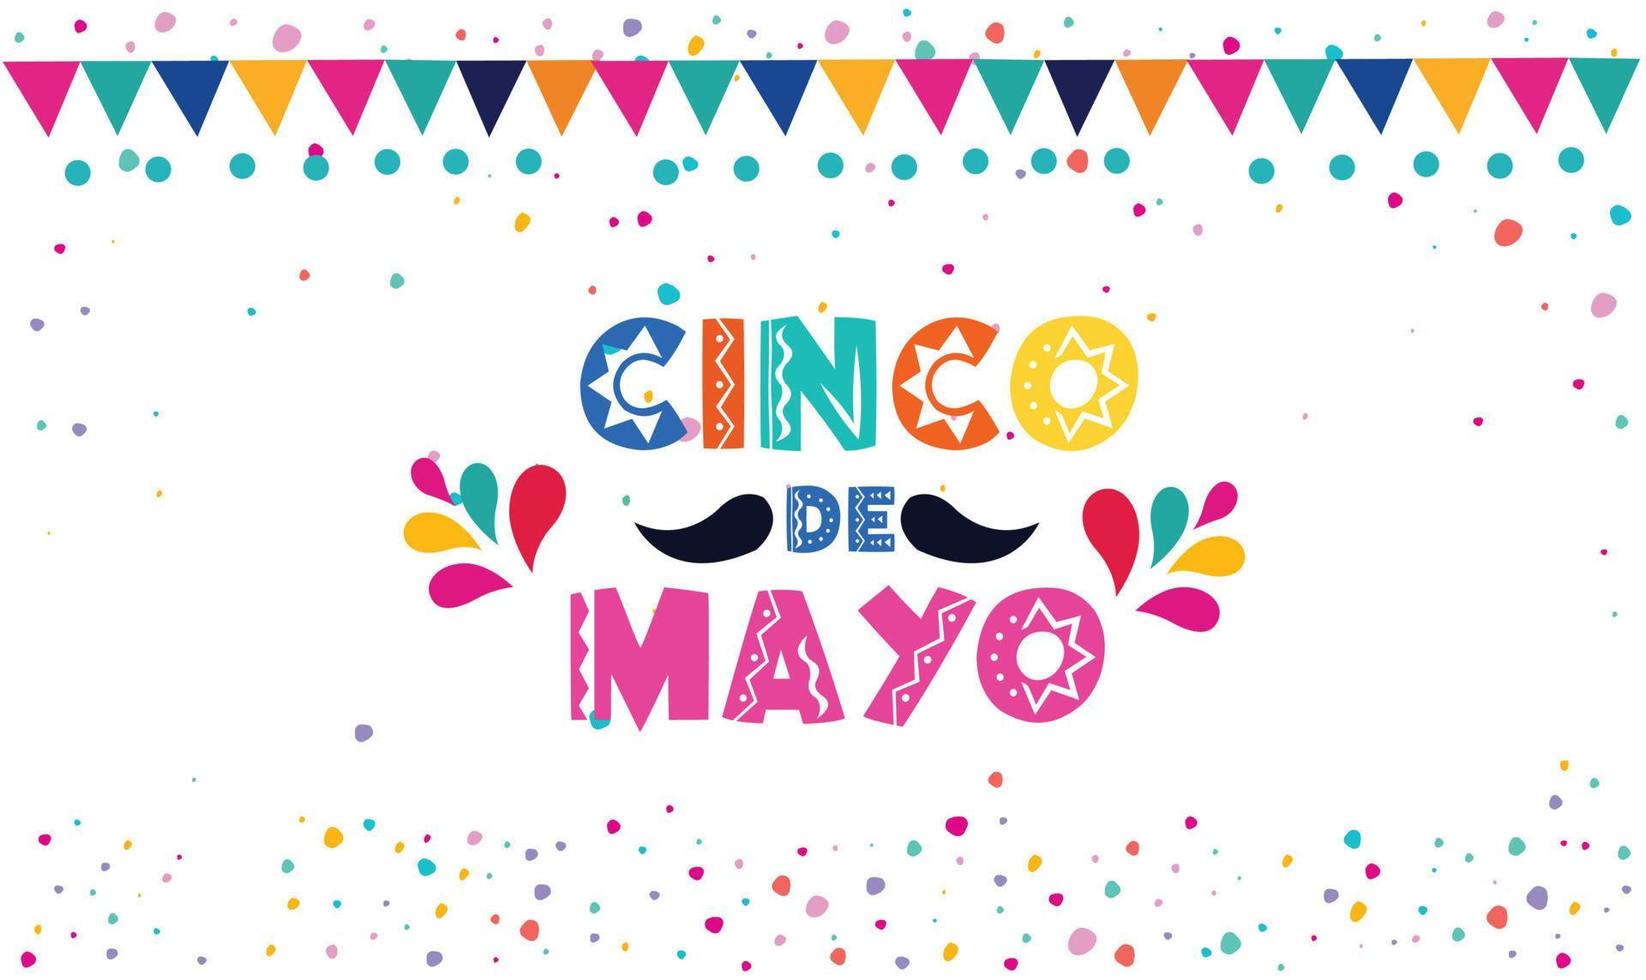 cinco de Mayo - - kann 5, ein Bundes Urlaub im Mexiko Banner Vorlage zum Mexiko Unabhängigkeit Feier Hintergrund. Fiesta Banner und Poster Design mit Flaggen, Blumen, und Dekorationen. vektor